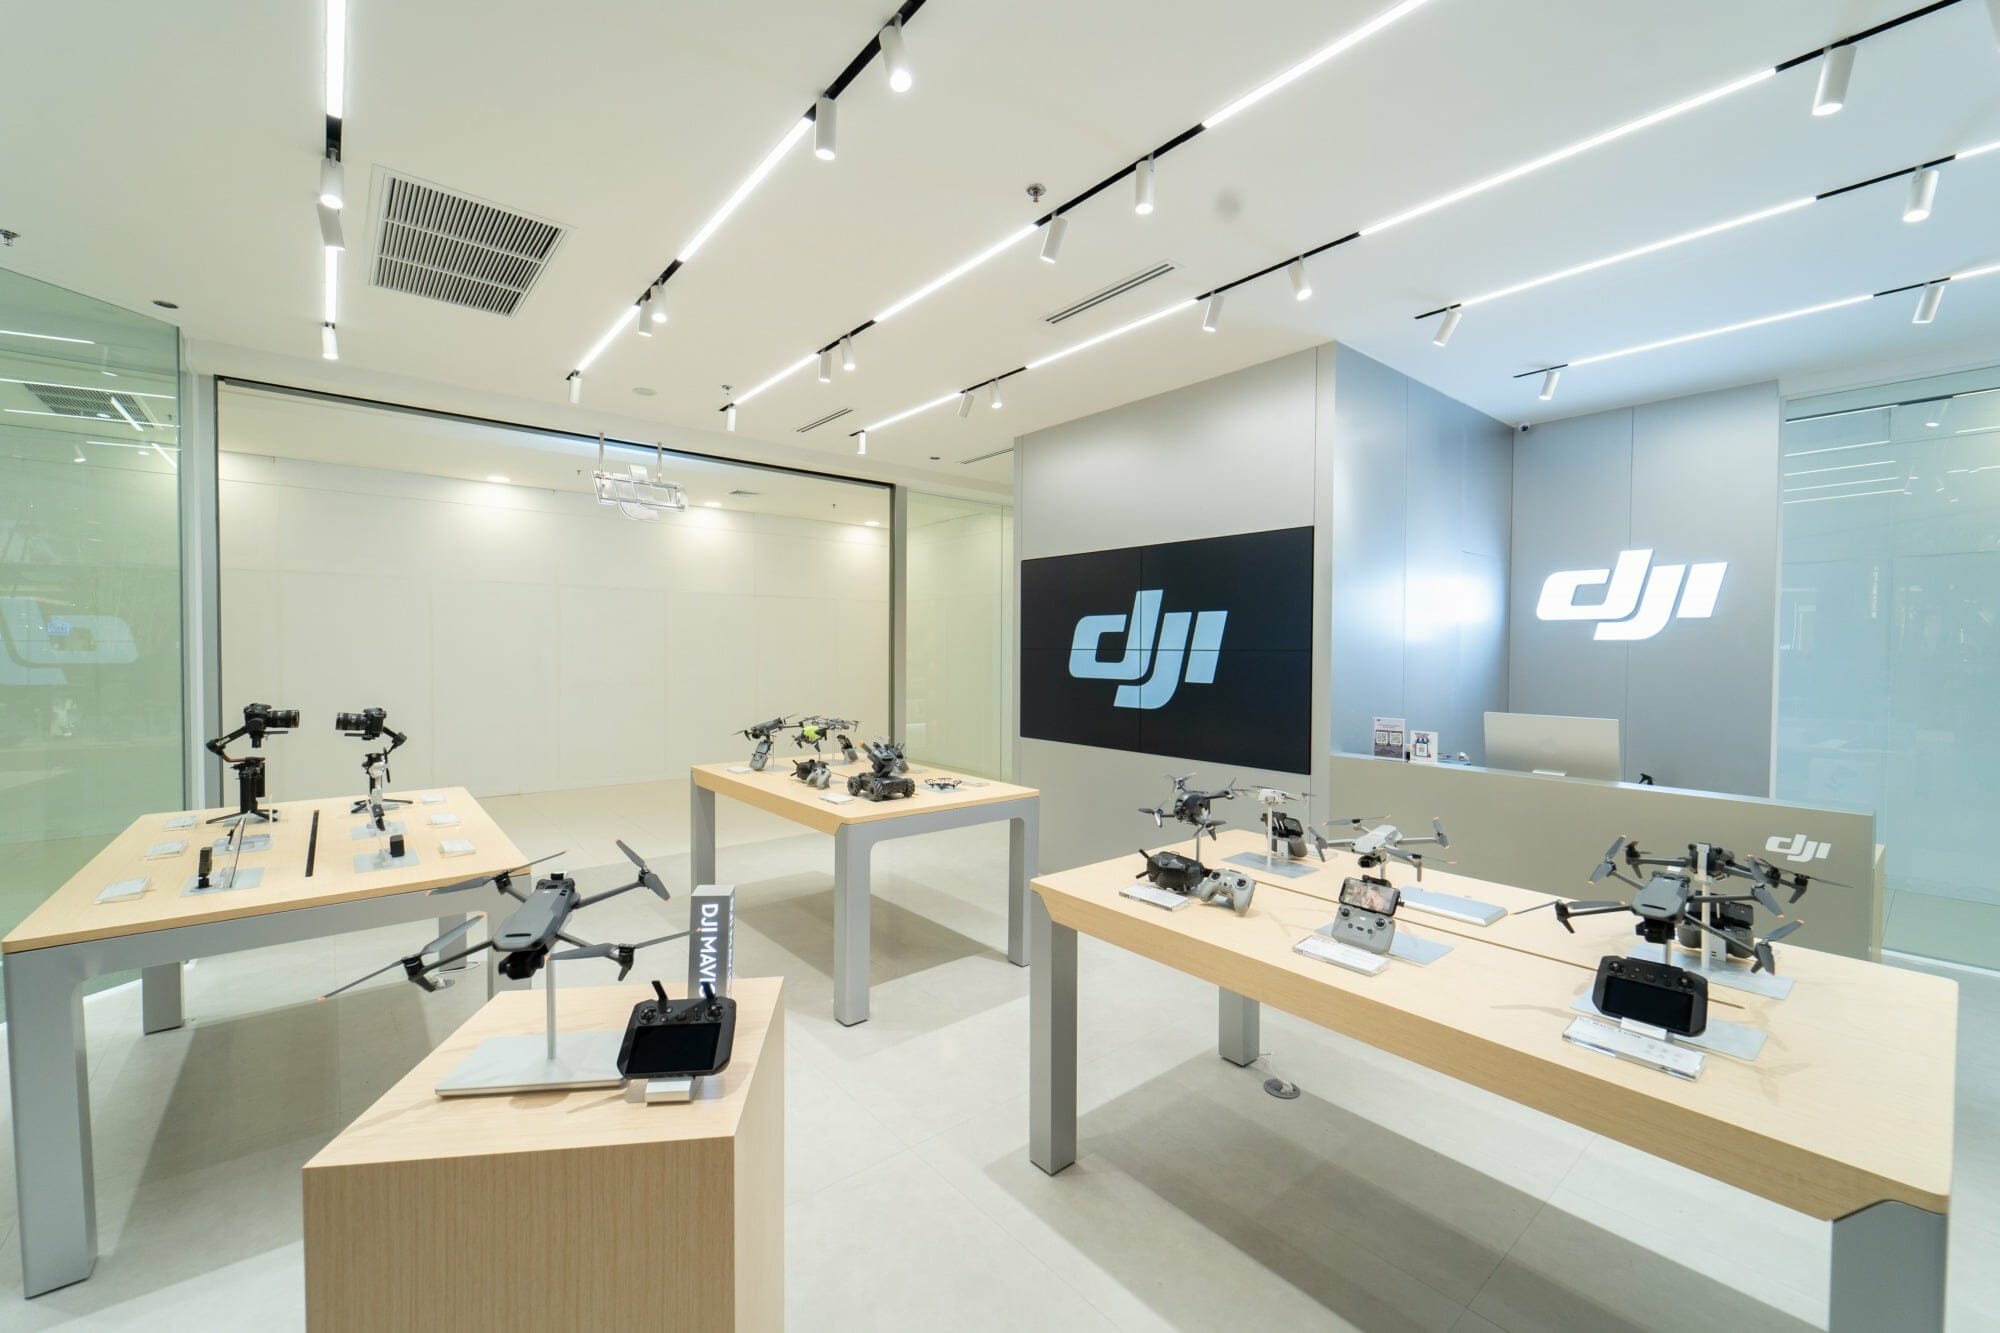 DJI เปิดสาขาใหม่ DJI Experience Store สาขา ฟิวเจอร์พาร์ค รังสิต 3